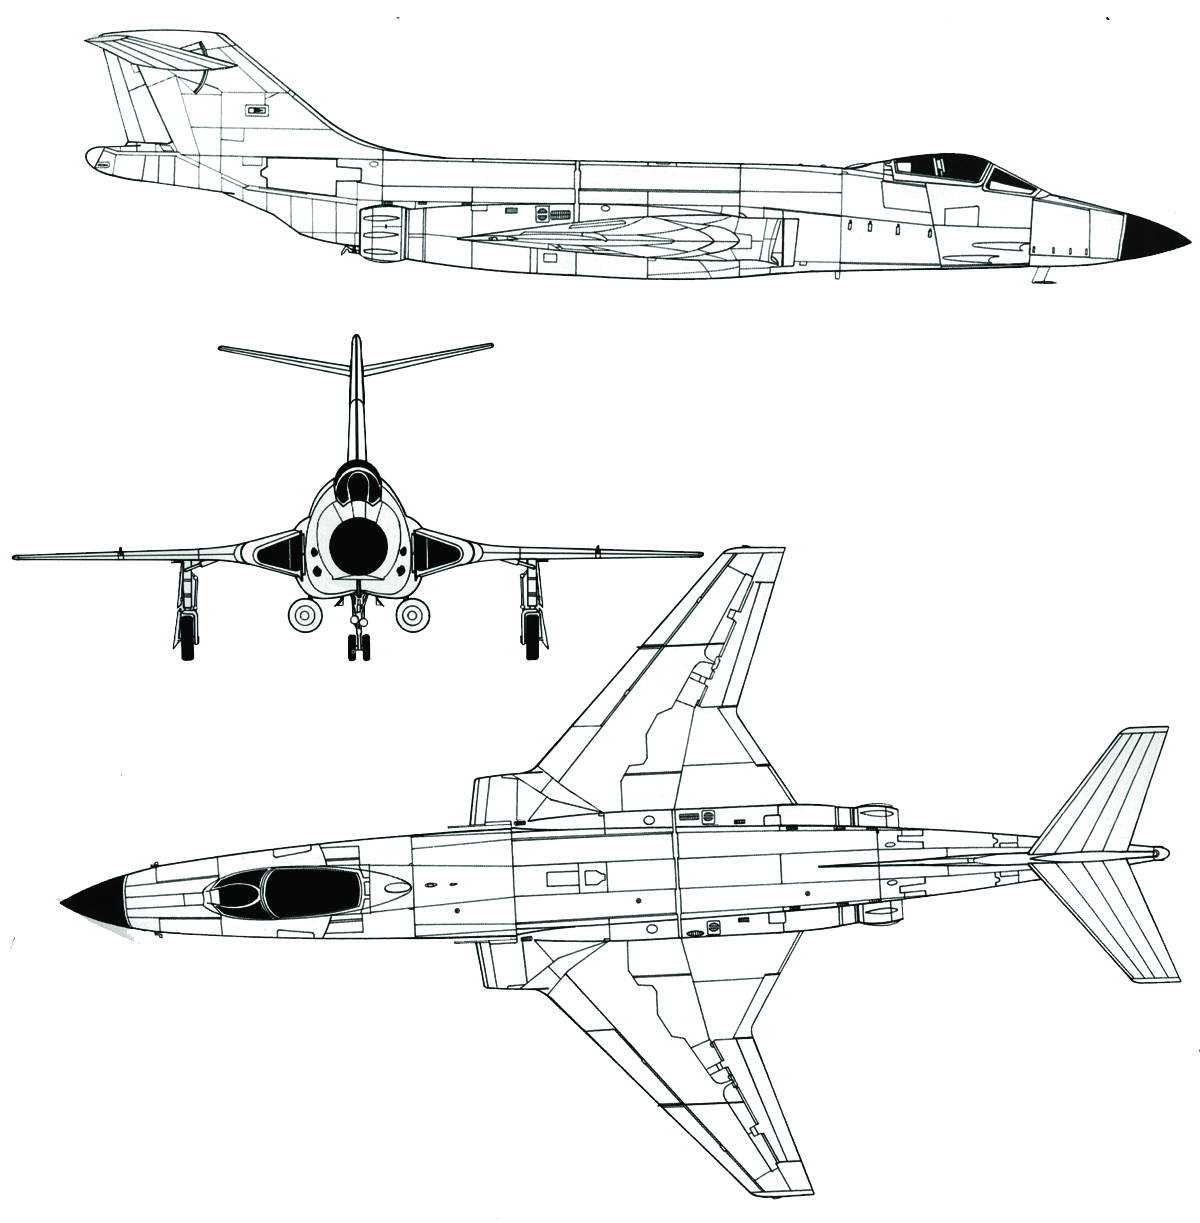 McDonnell F-101B-80-MC Voodoo Blueprint